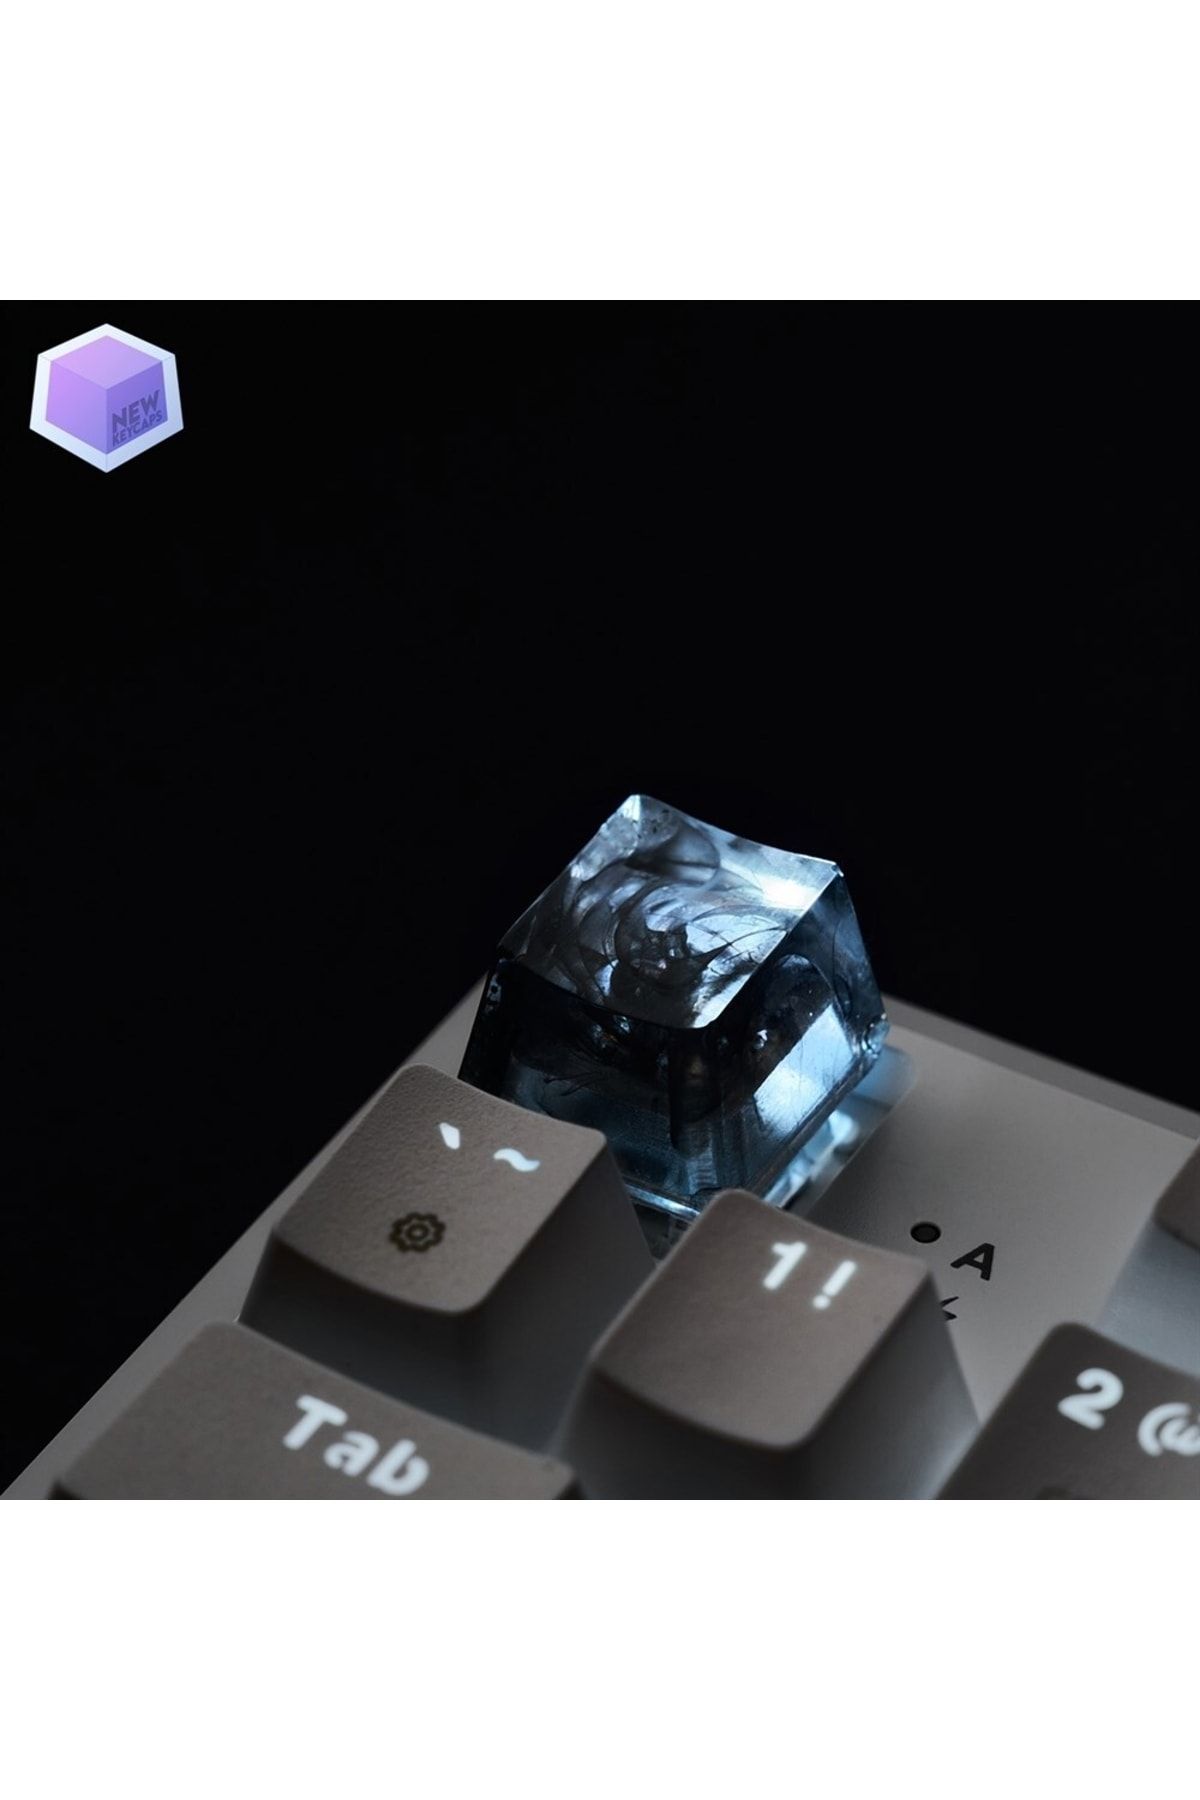 New Keycaps Siyah Detaylı Tasarım Esc Mekanik Klavye Tuşu Artisan Keycaps